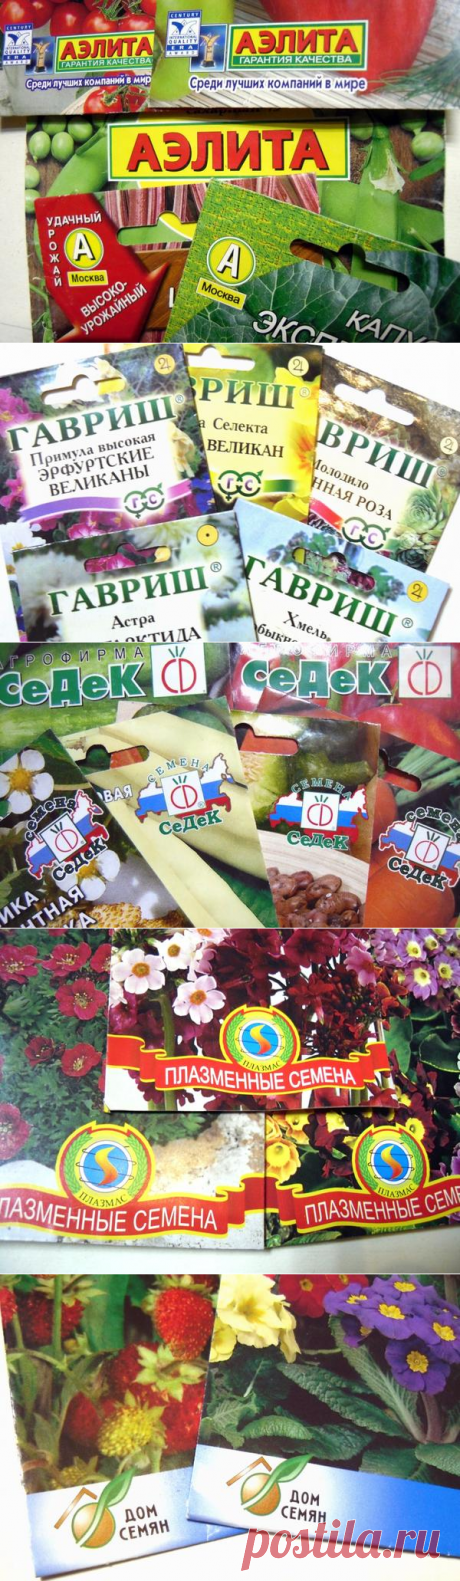 .7dach.ru/   Семена: 10 самых популярных производителей семян